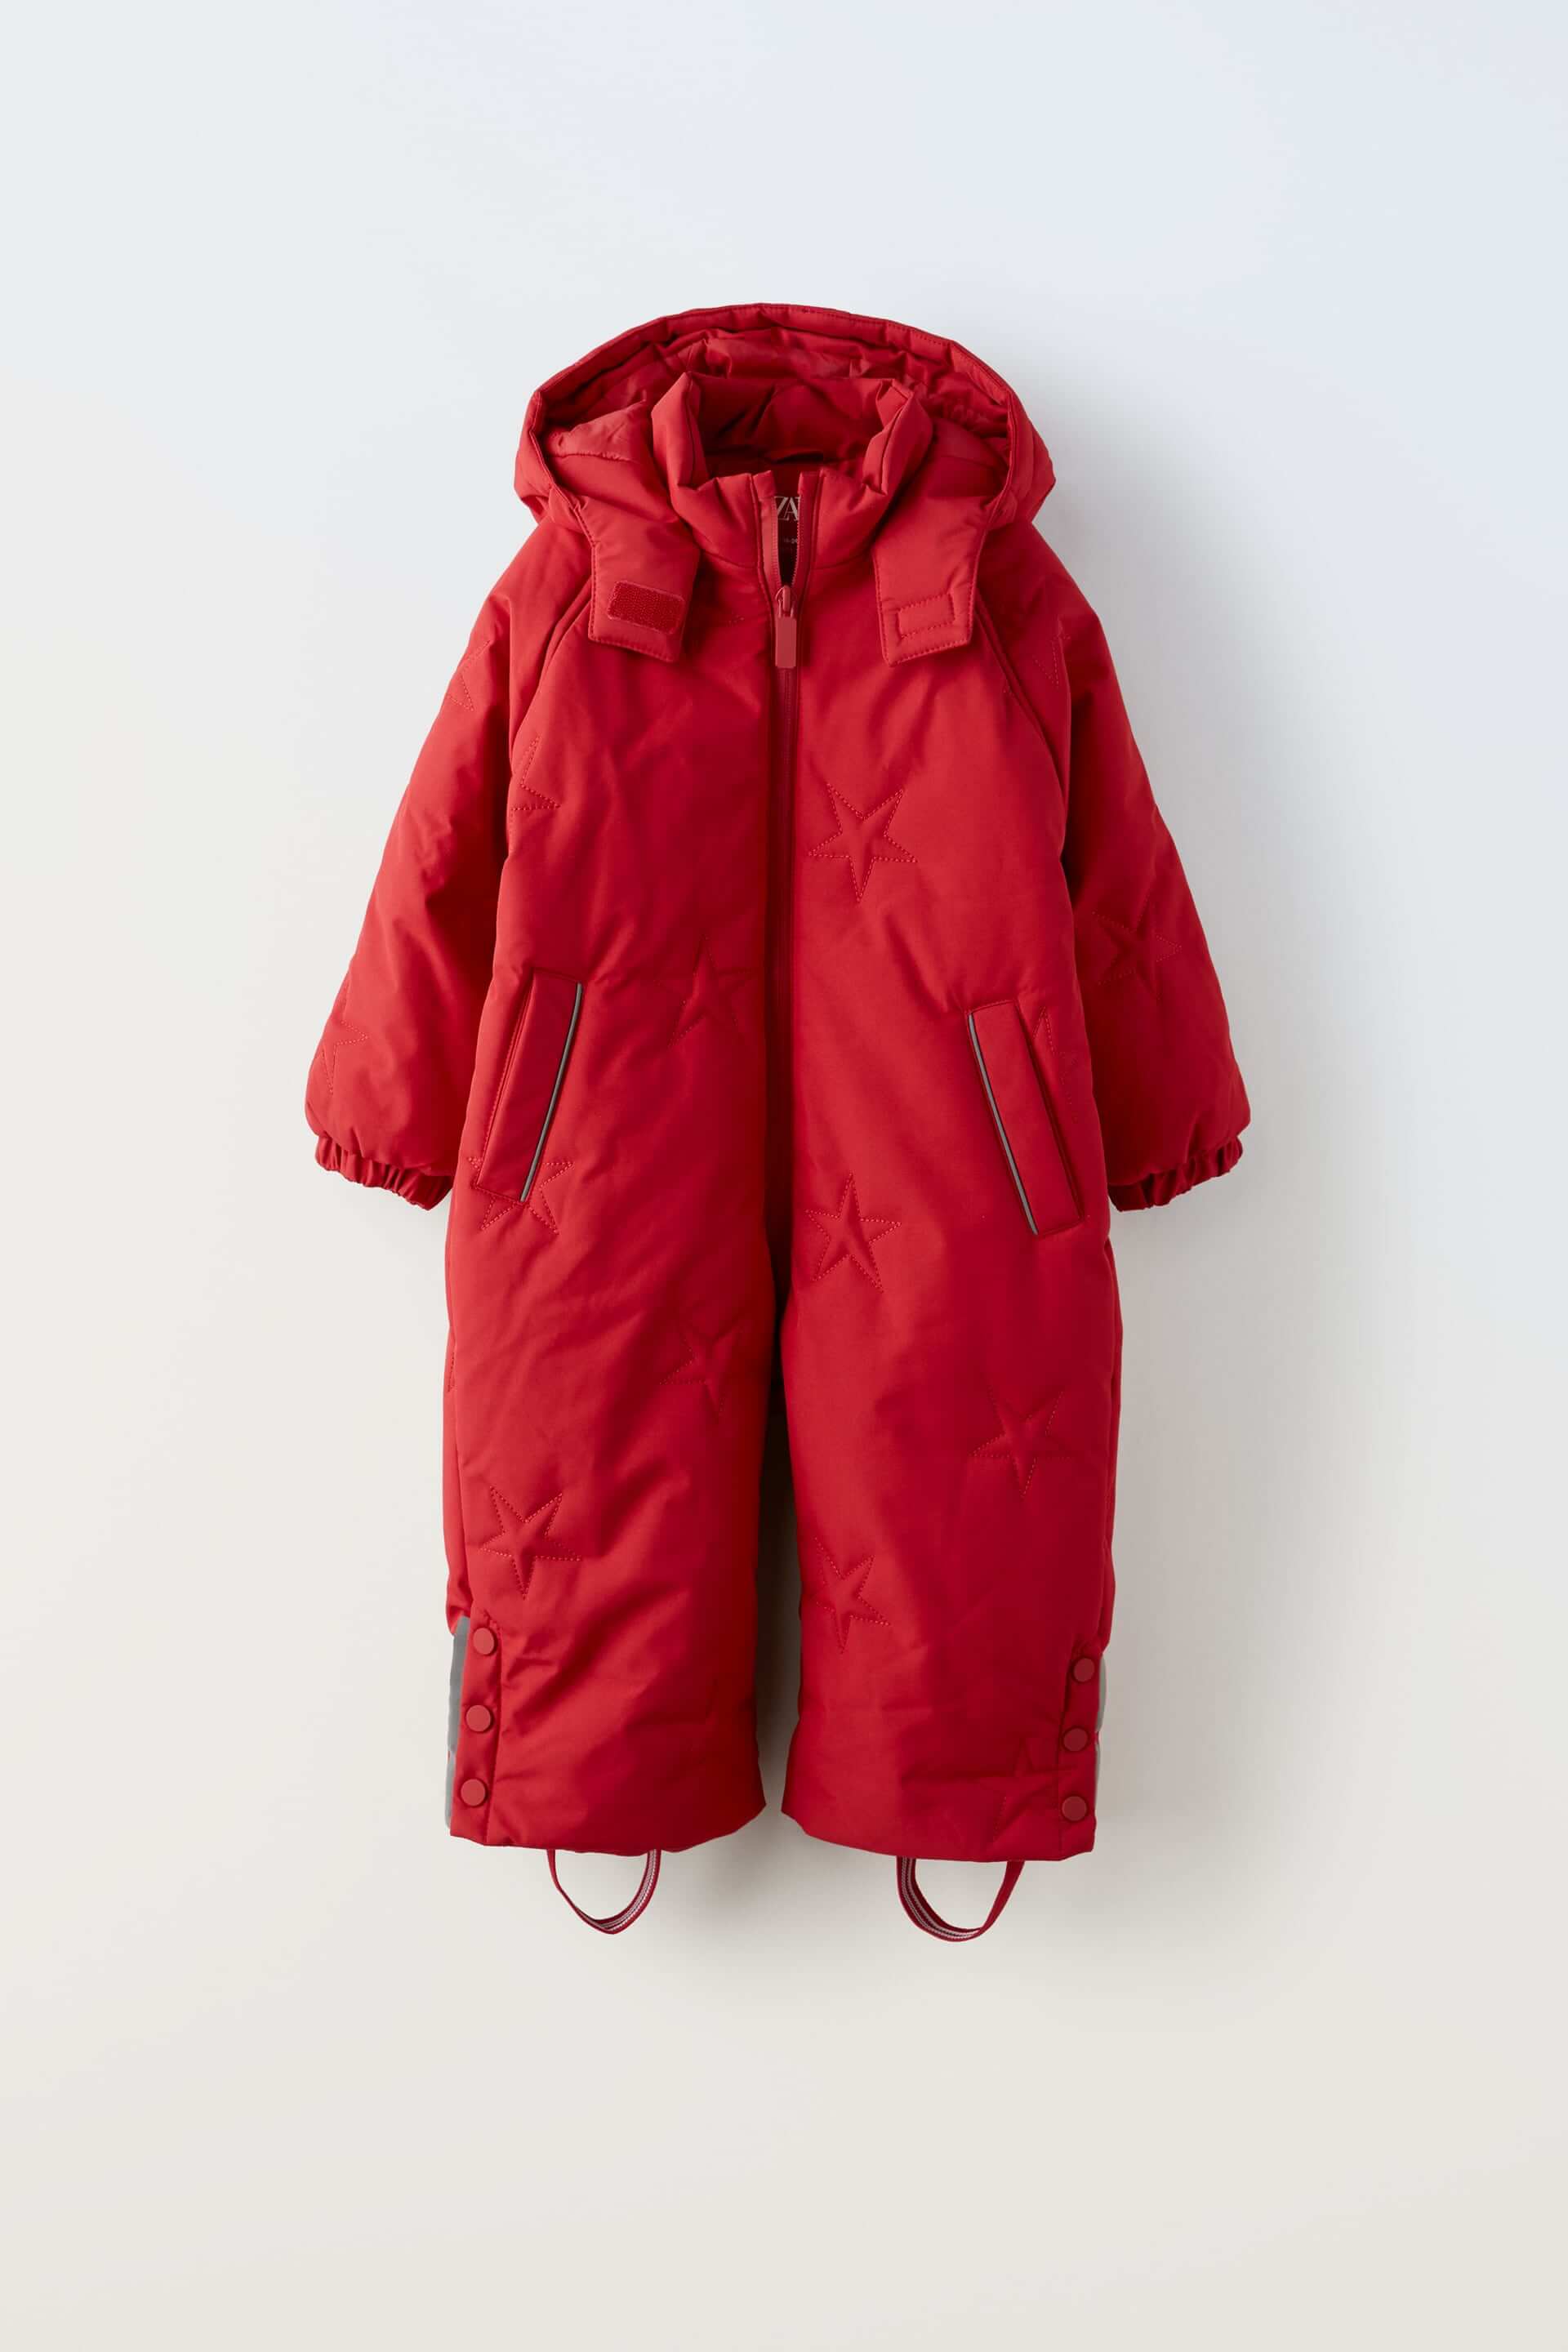 Комбинезон детский Zara Water-repellent And Wind-protection, красный куртка zara water repellent technical чёрный